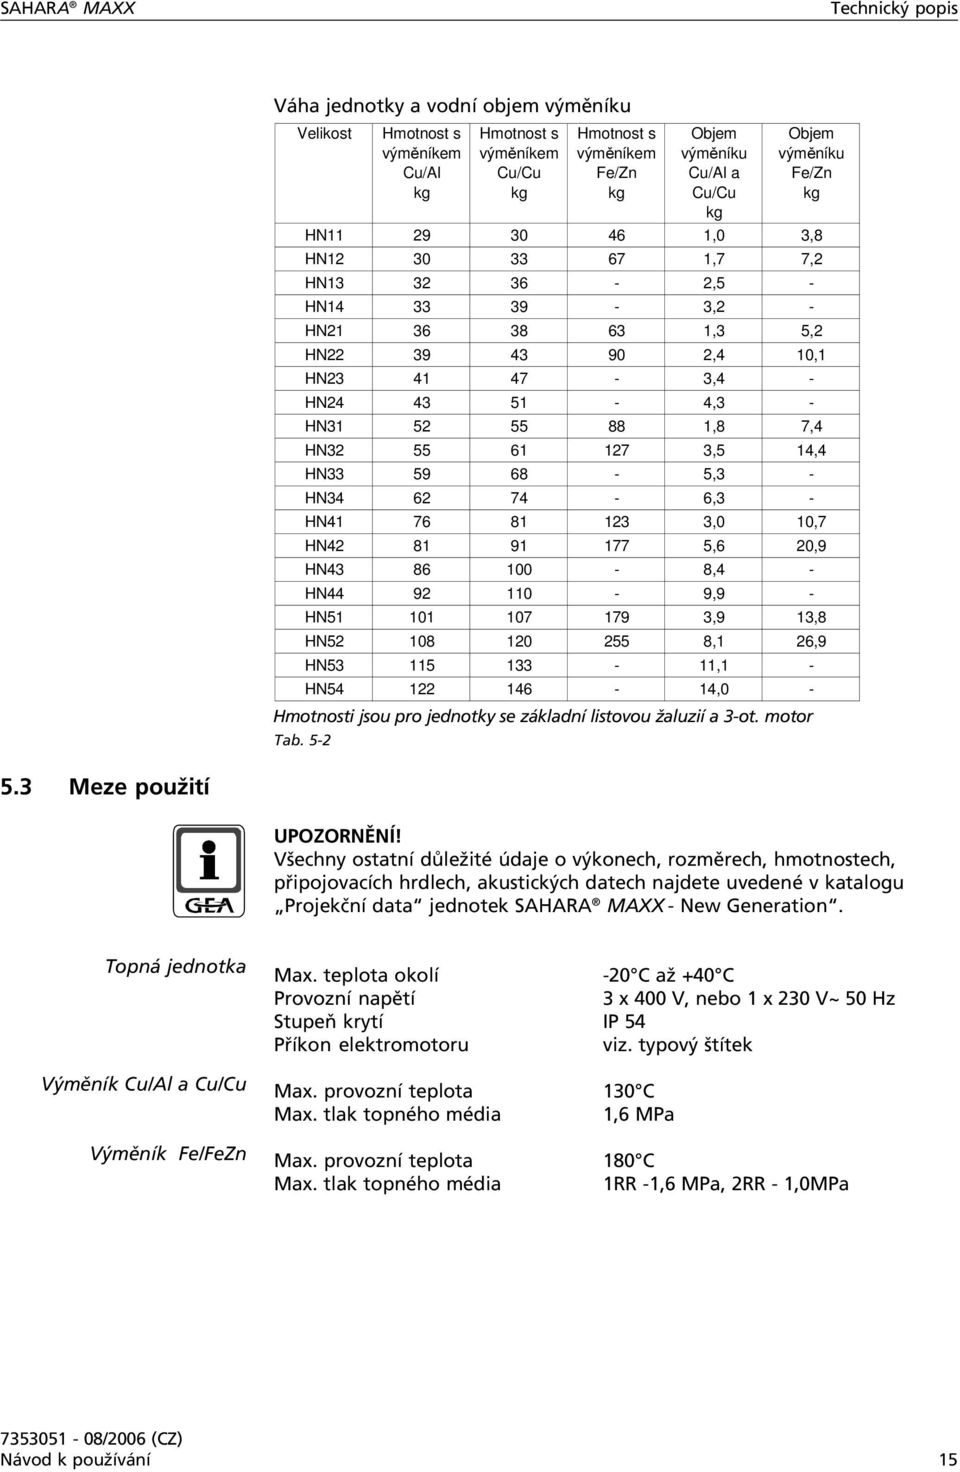 HN51 101 107 179 3,9 13,8 HN52 108 120 255 8,1 26,9 HN53 115 133-11,1 - HN54 122 146-14,0 - Hmotnosti jsou pro jednotky se základní listovou žaluzií a 3-ot. motor Tab.